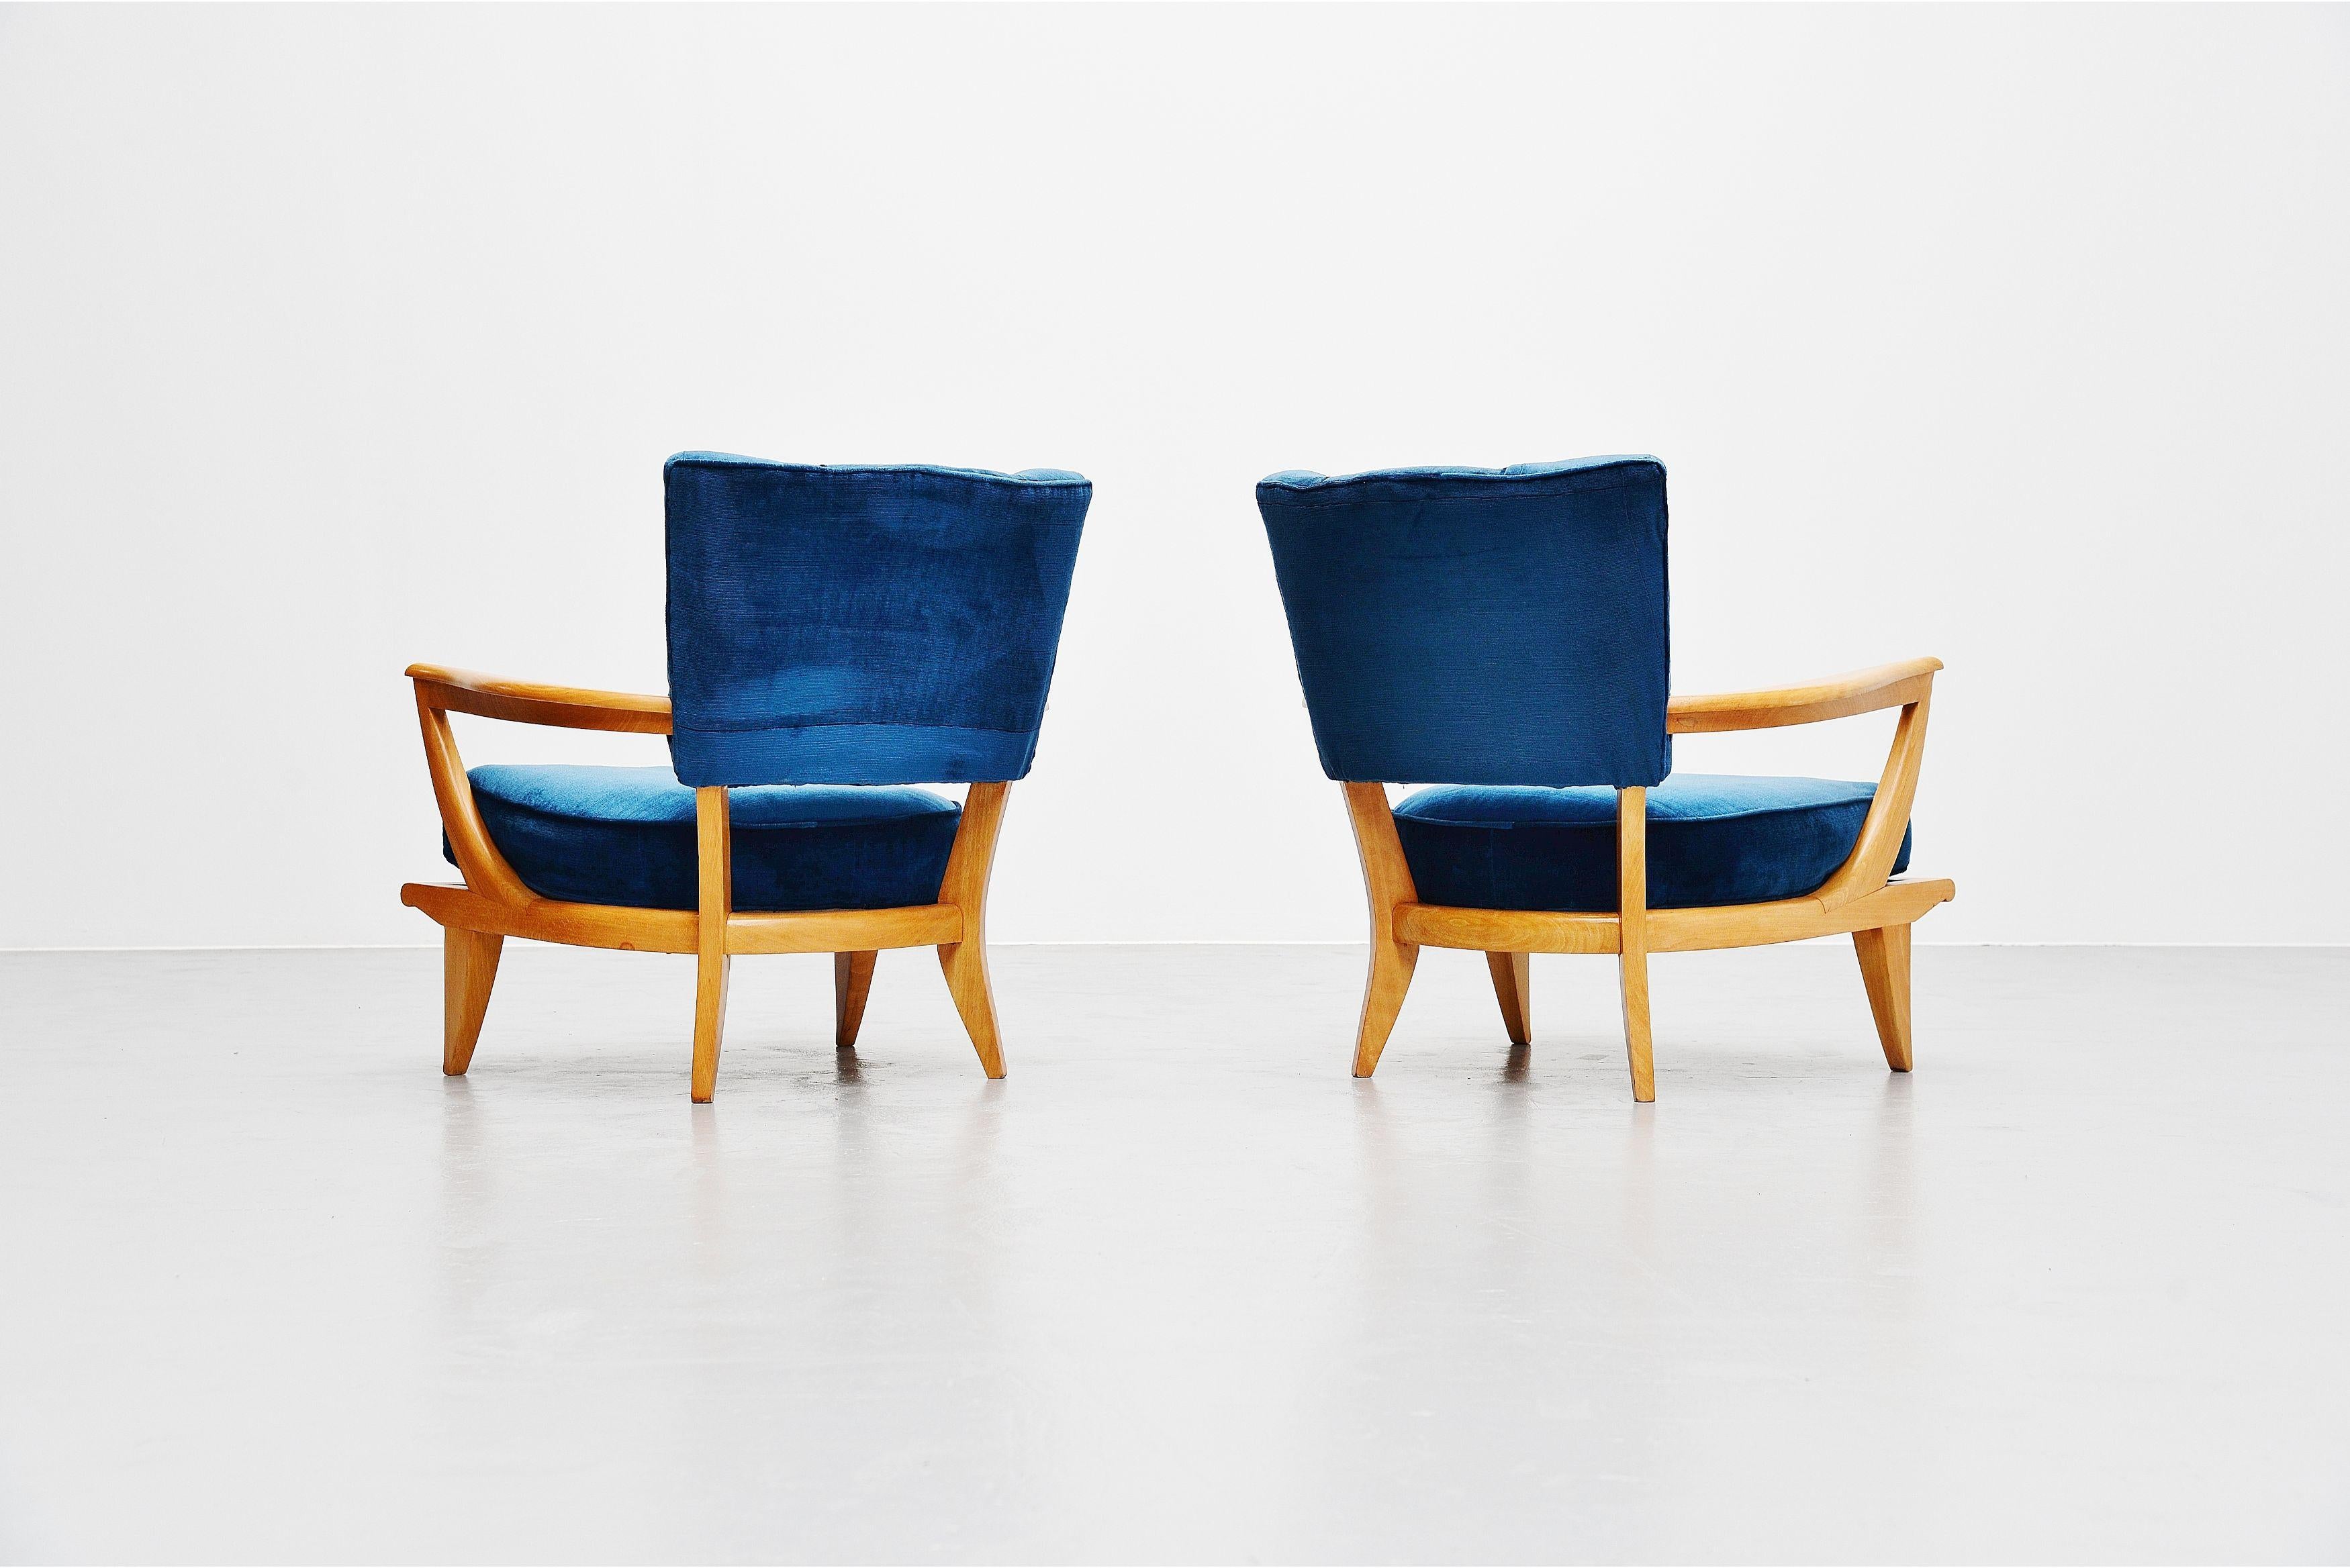 Wunderschönes Paar niedriger Sessel, Modell SK40, entworfen von Etienne-Henri Martin und hergestellt von Steiner, Frankreich 1952. Diese Stühle haben einen massiven Buchenrahmen, der vollständig aufgearbeitet und in ausgezeichnetem Zustand ist. Sie